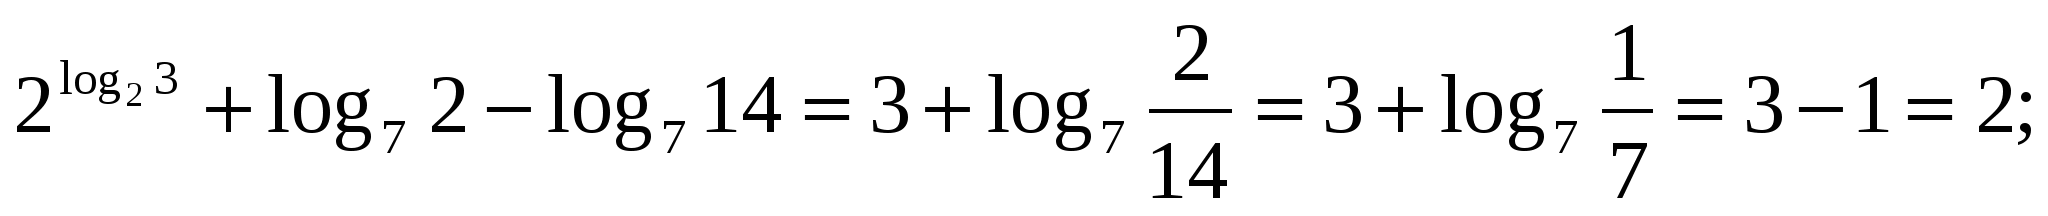 Урок по модульной технологии Логарифмы